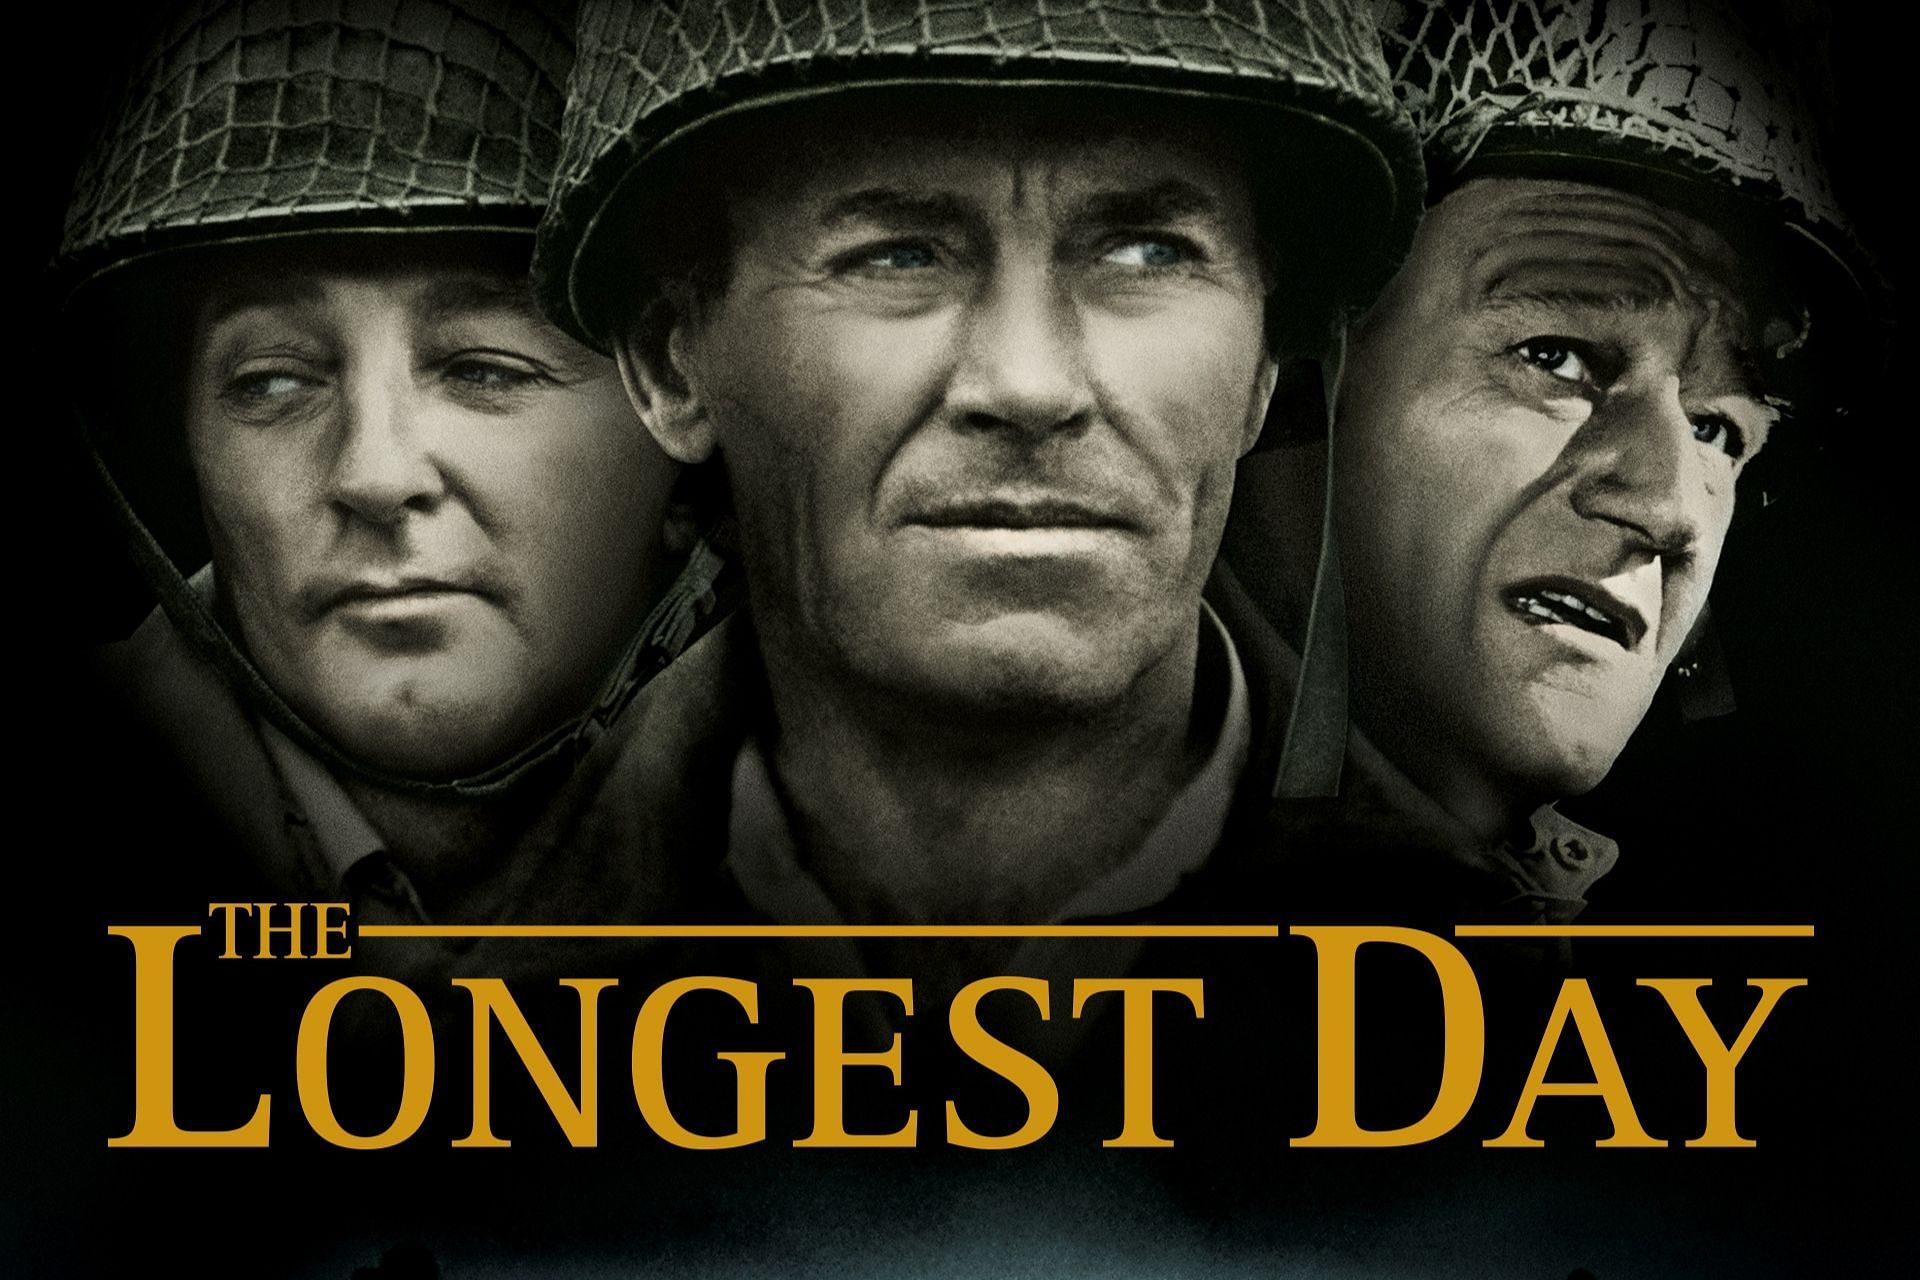 The Longest Day (Image via Amazon Prime)